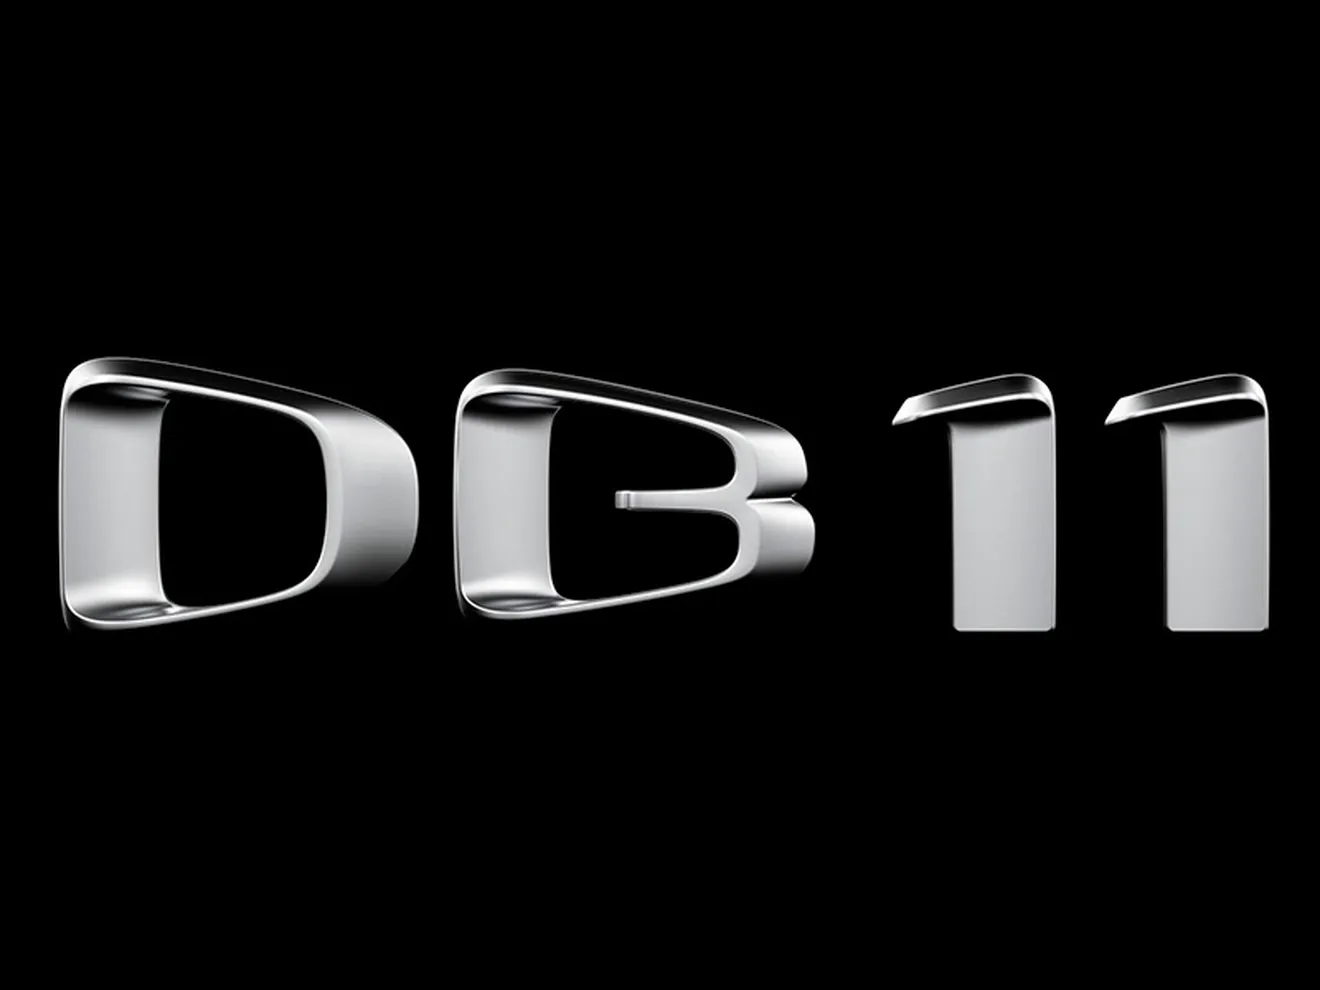 Aston Martin confirma la llegada de su nuevo buque insignia, el DB11